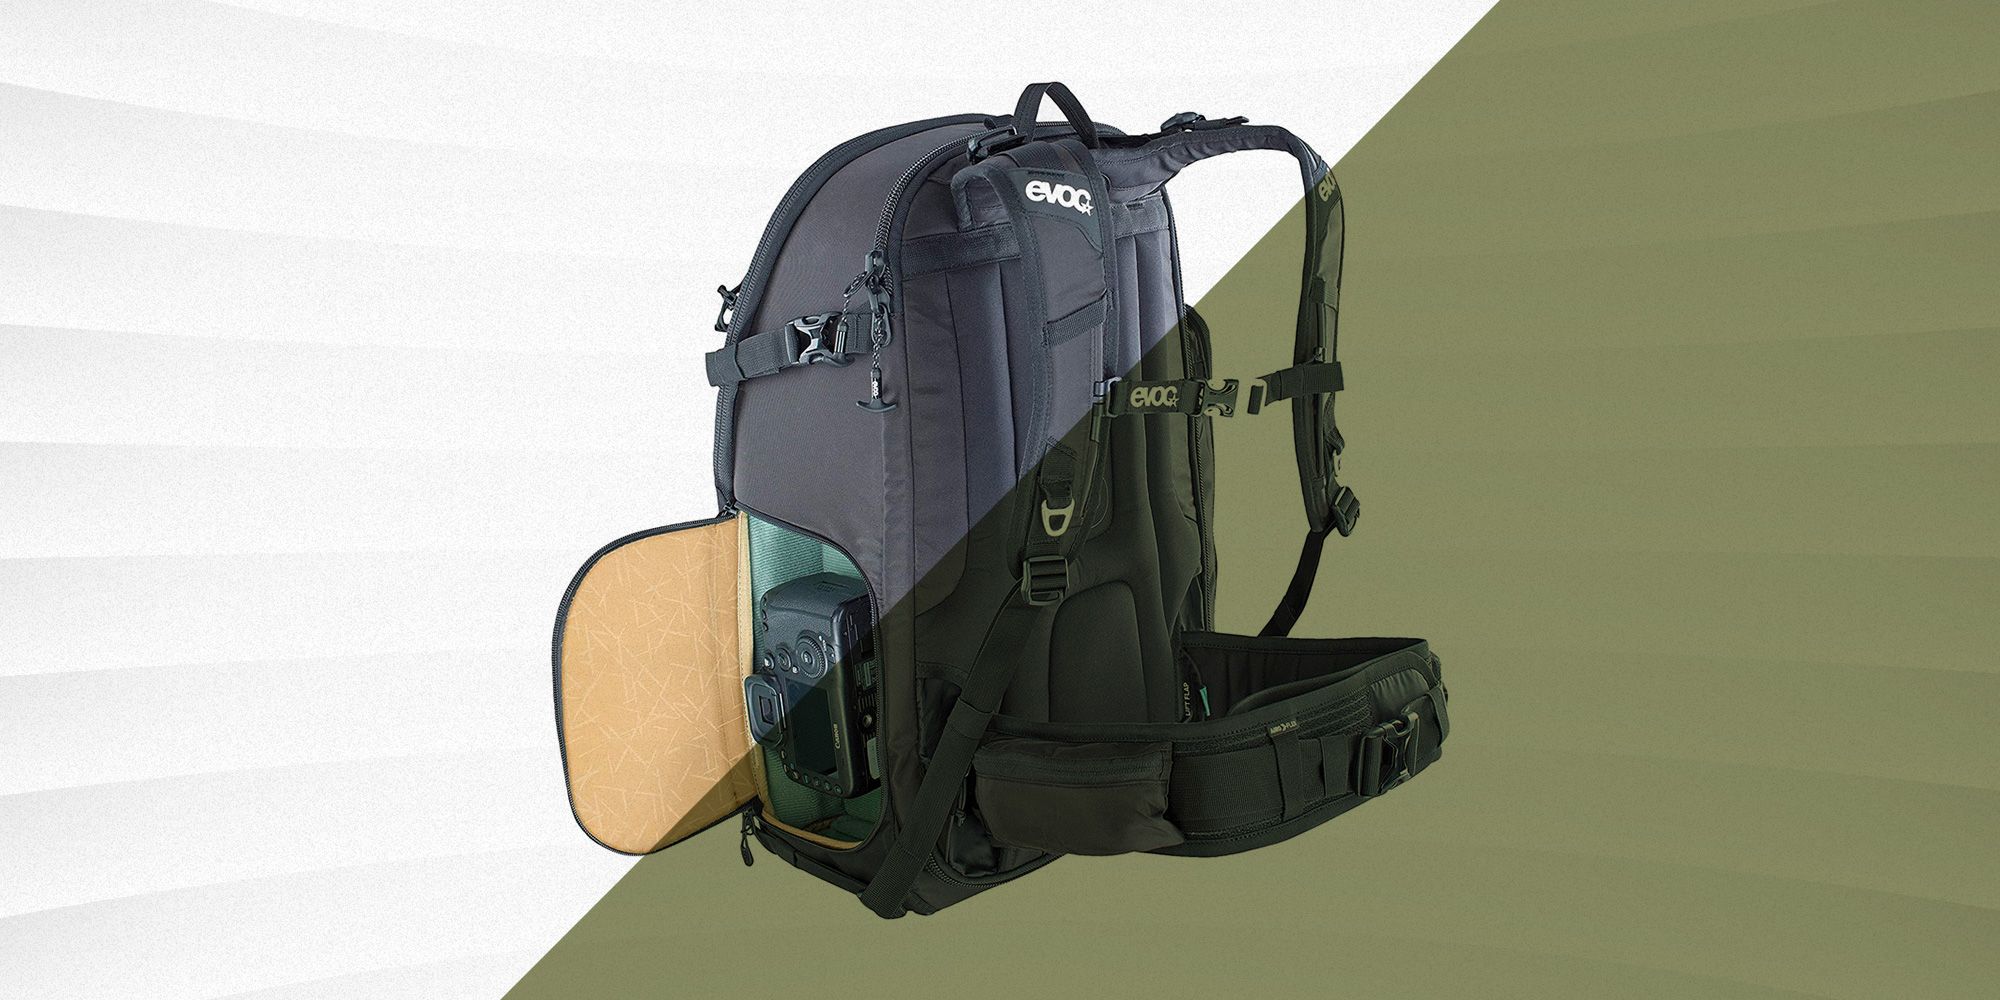 Best camera bags 2021: Backpack, hard case, roller bag